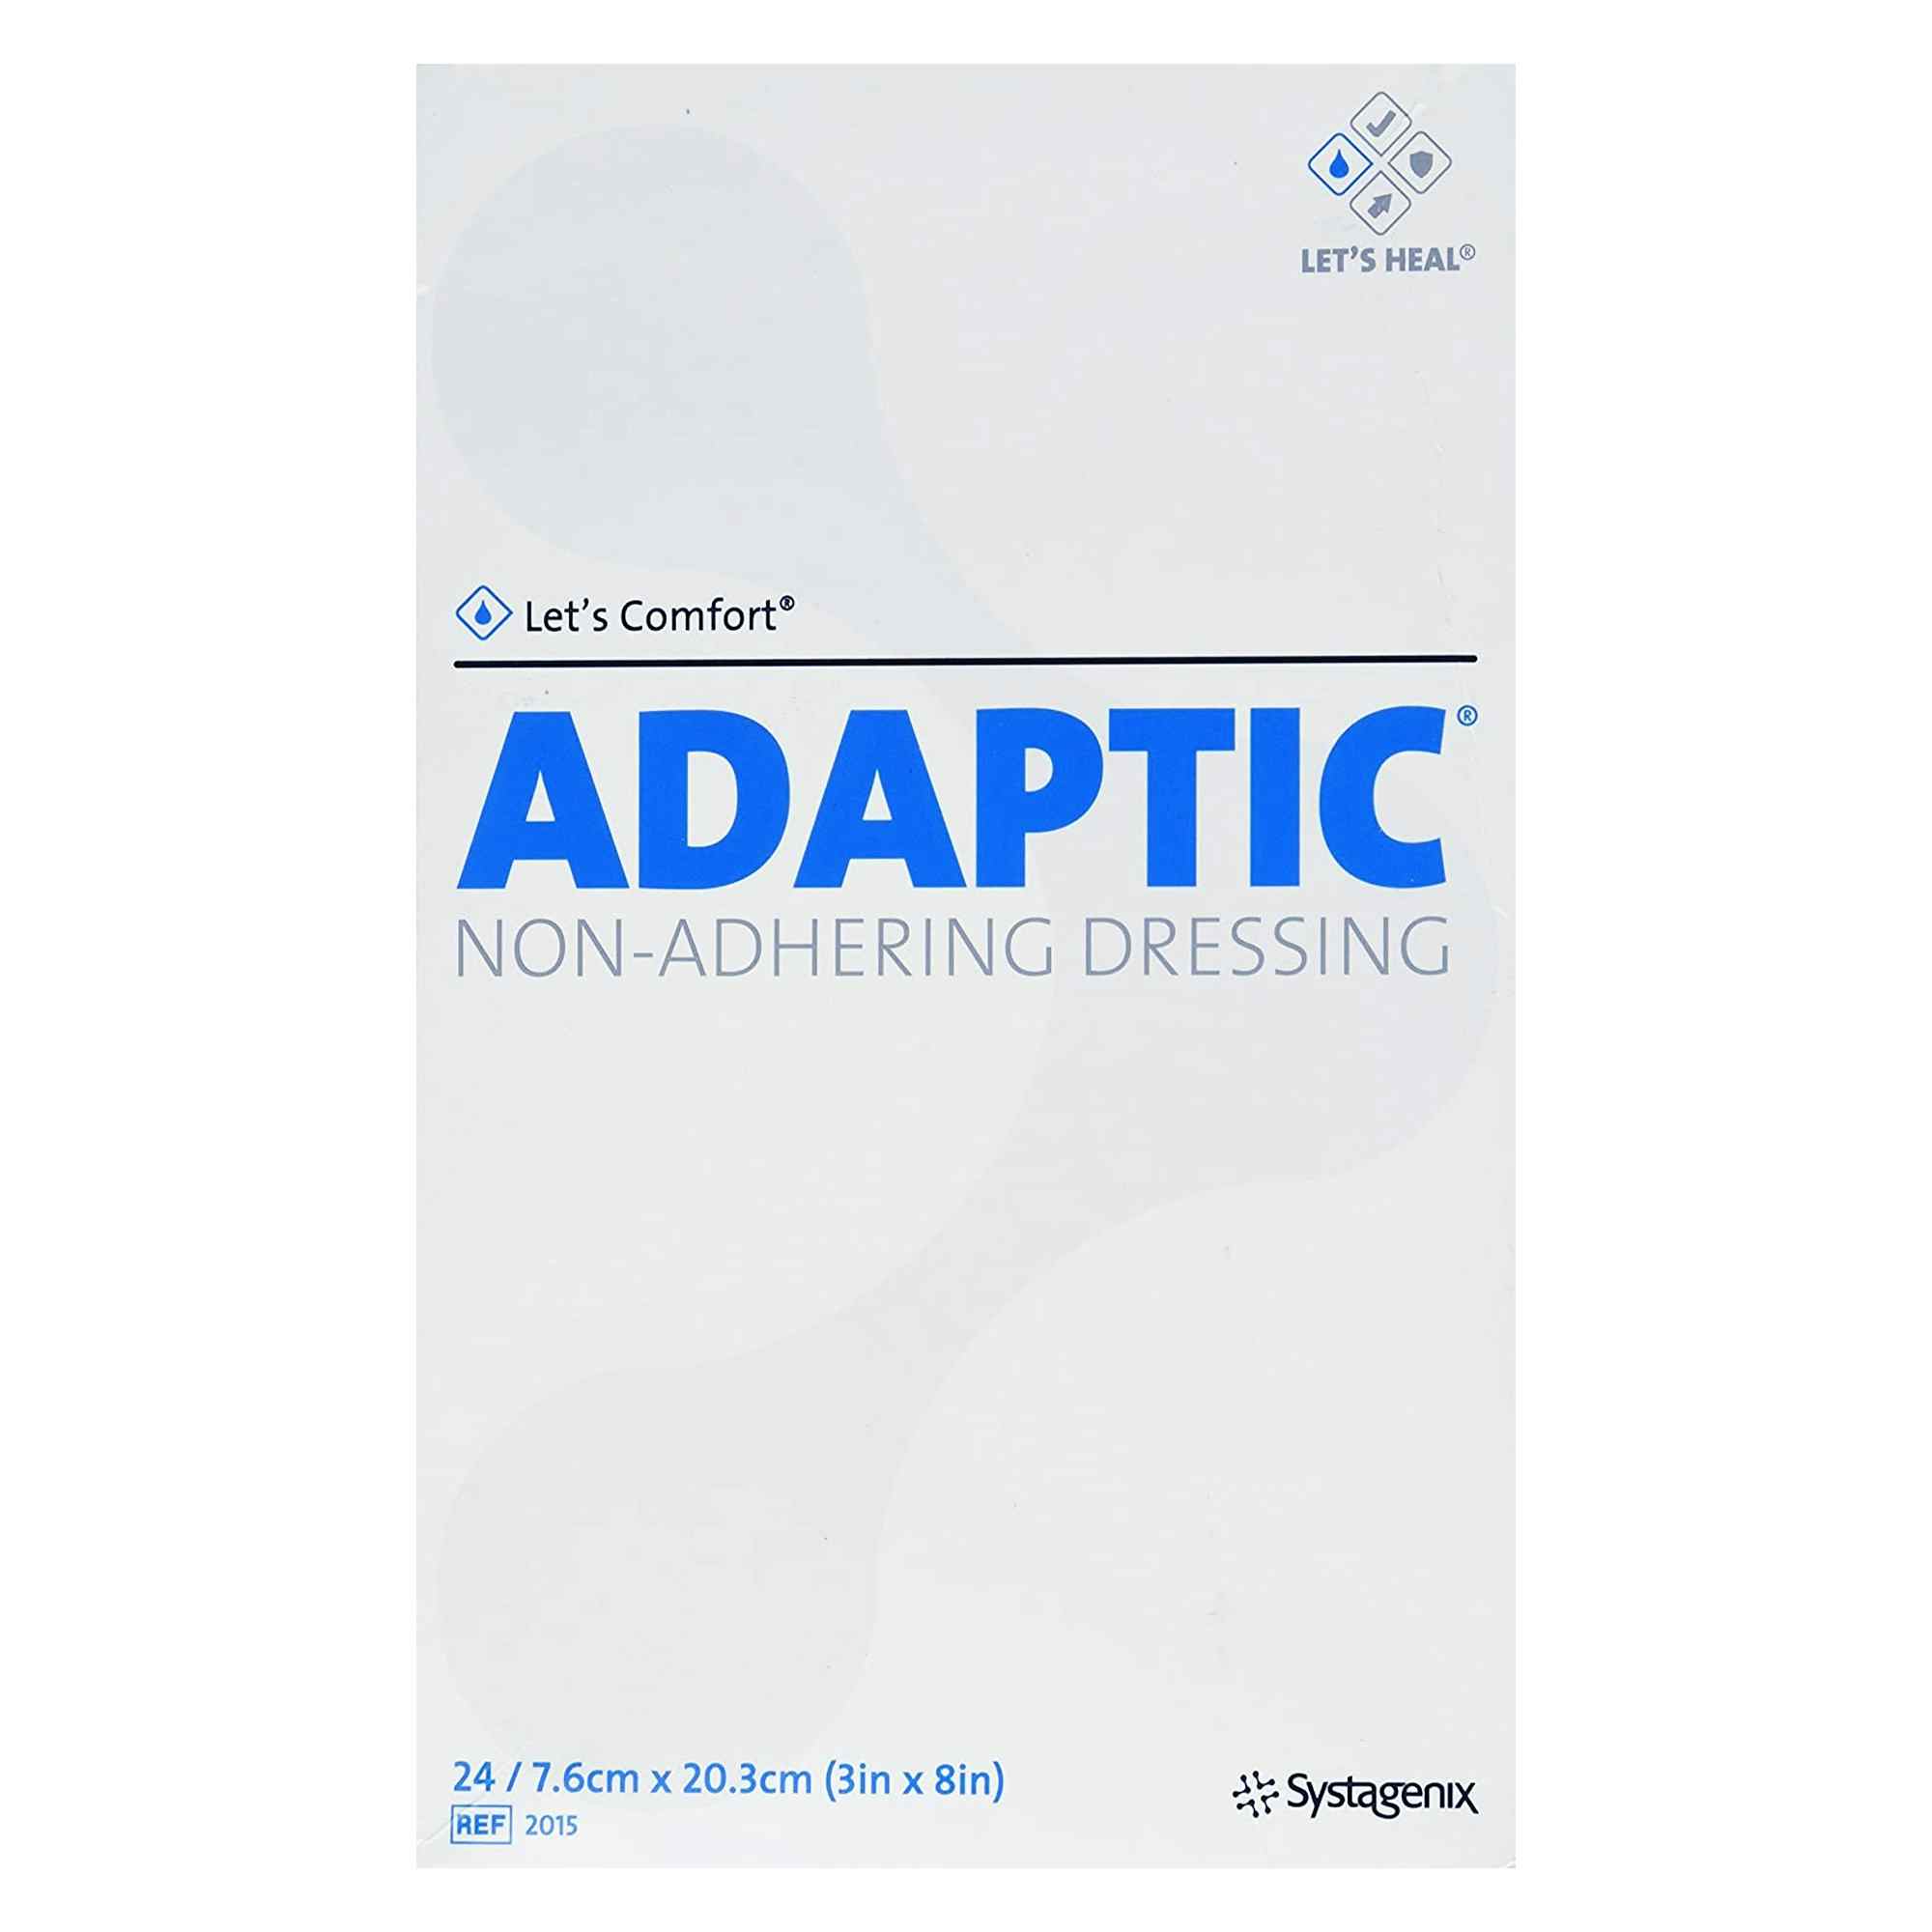 Adaptic Non-Adhering Dressing, 3 X 8", 2015, Box of 24